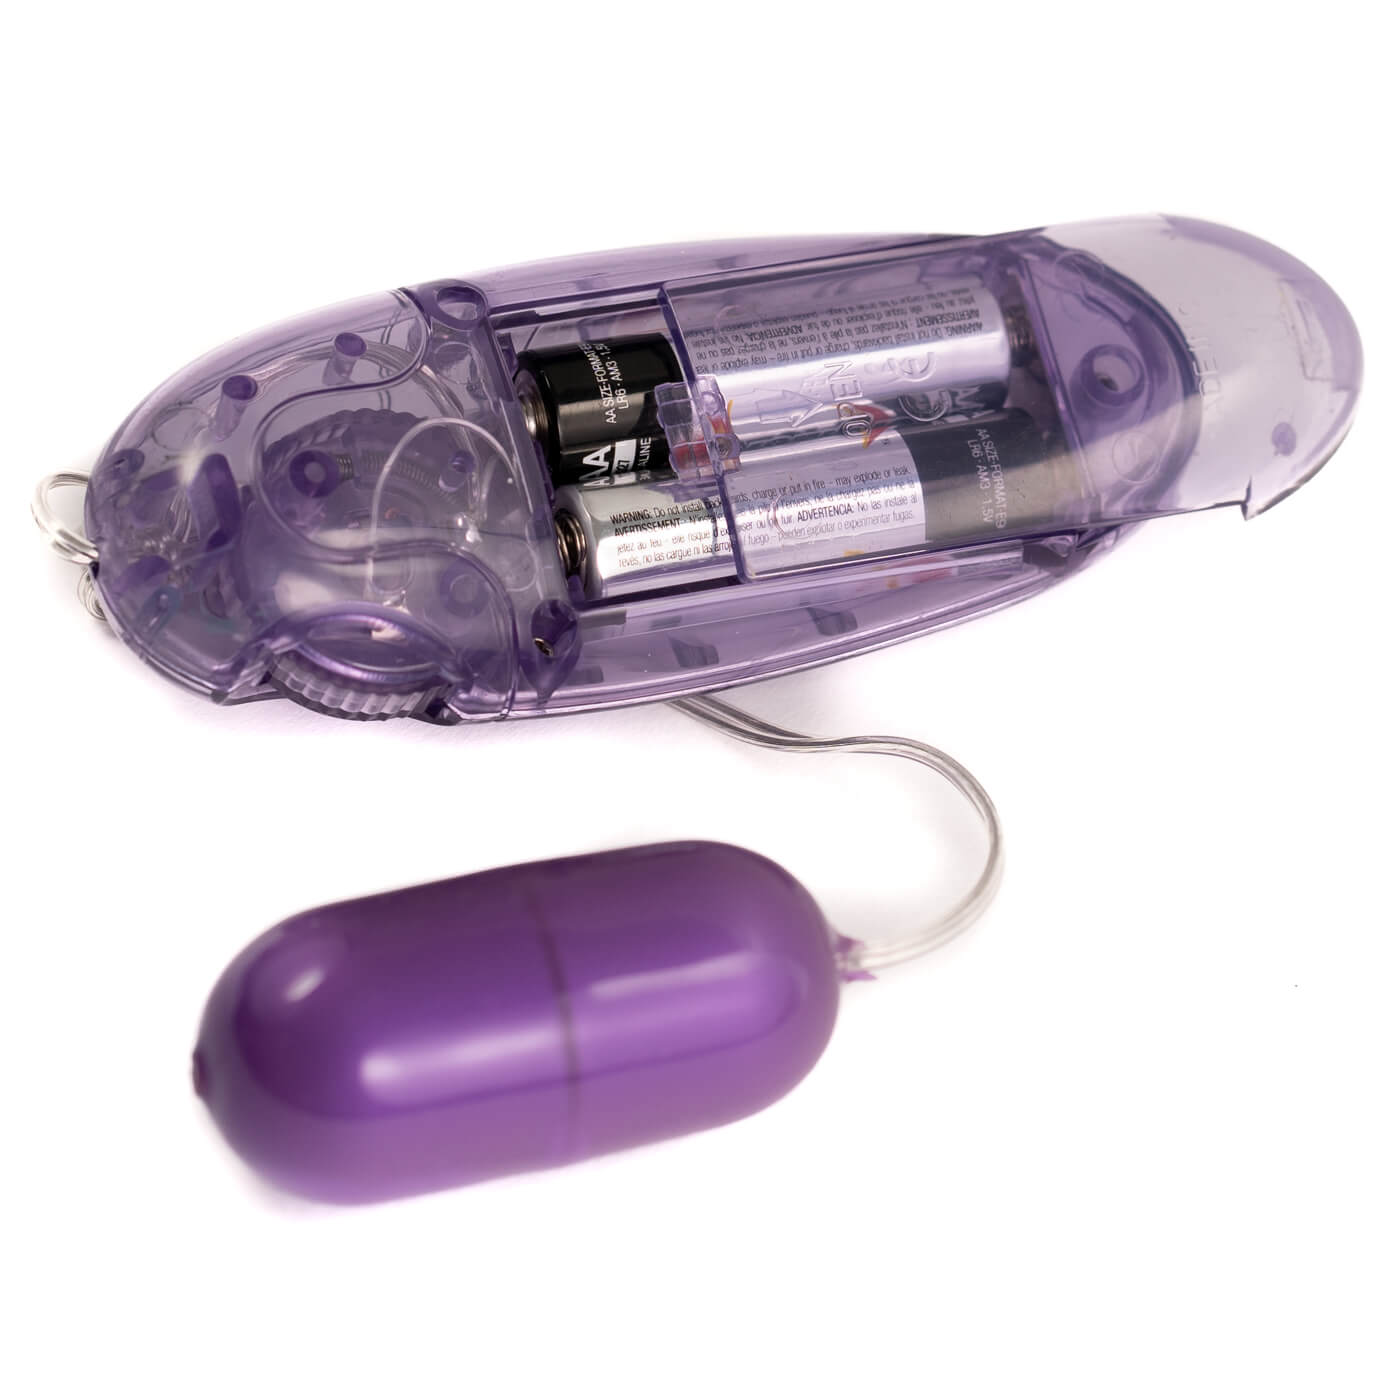 Basix Jelly Egg Remote Control Vibrator